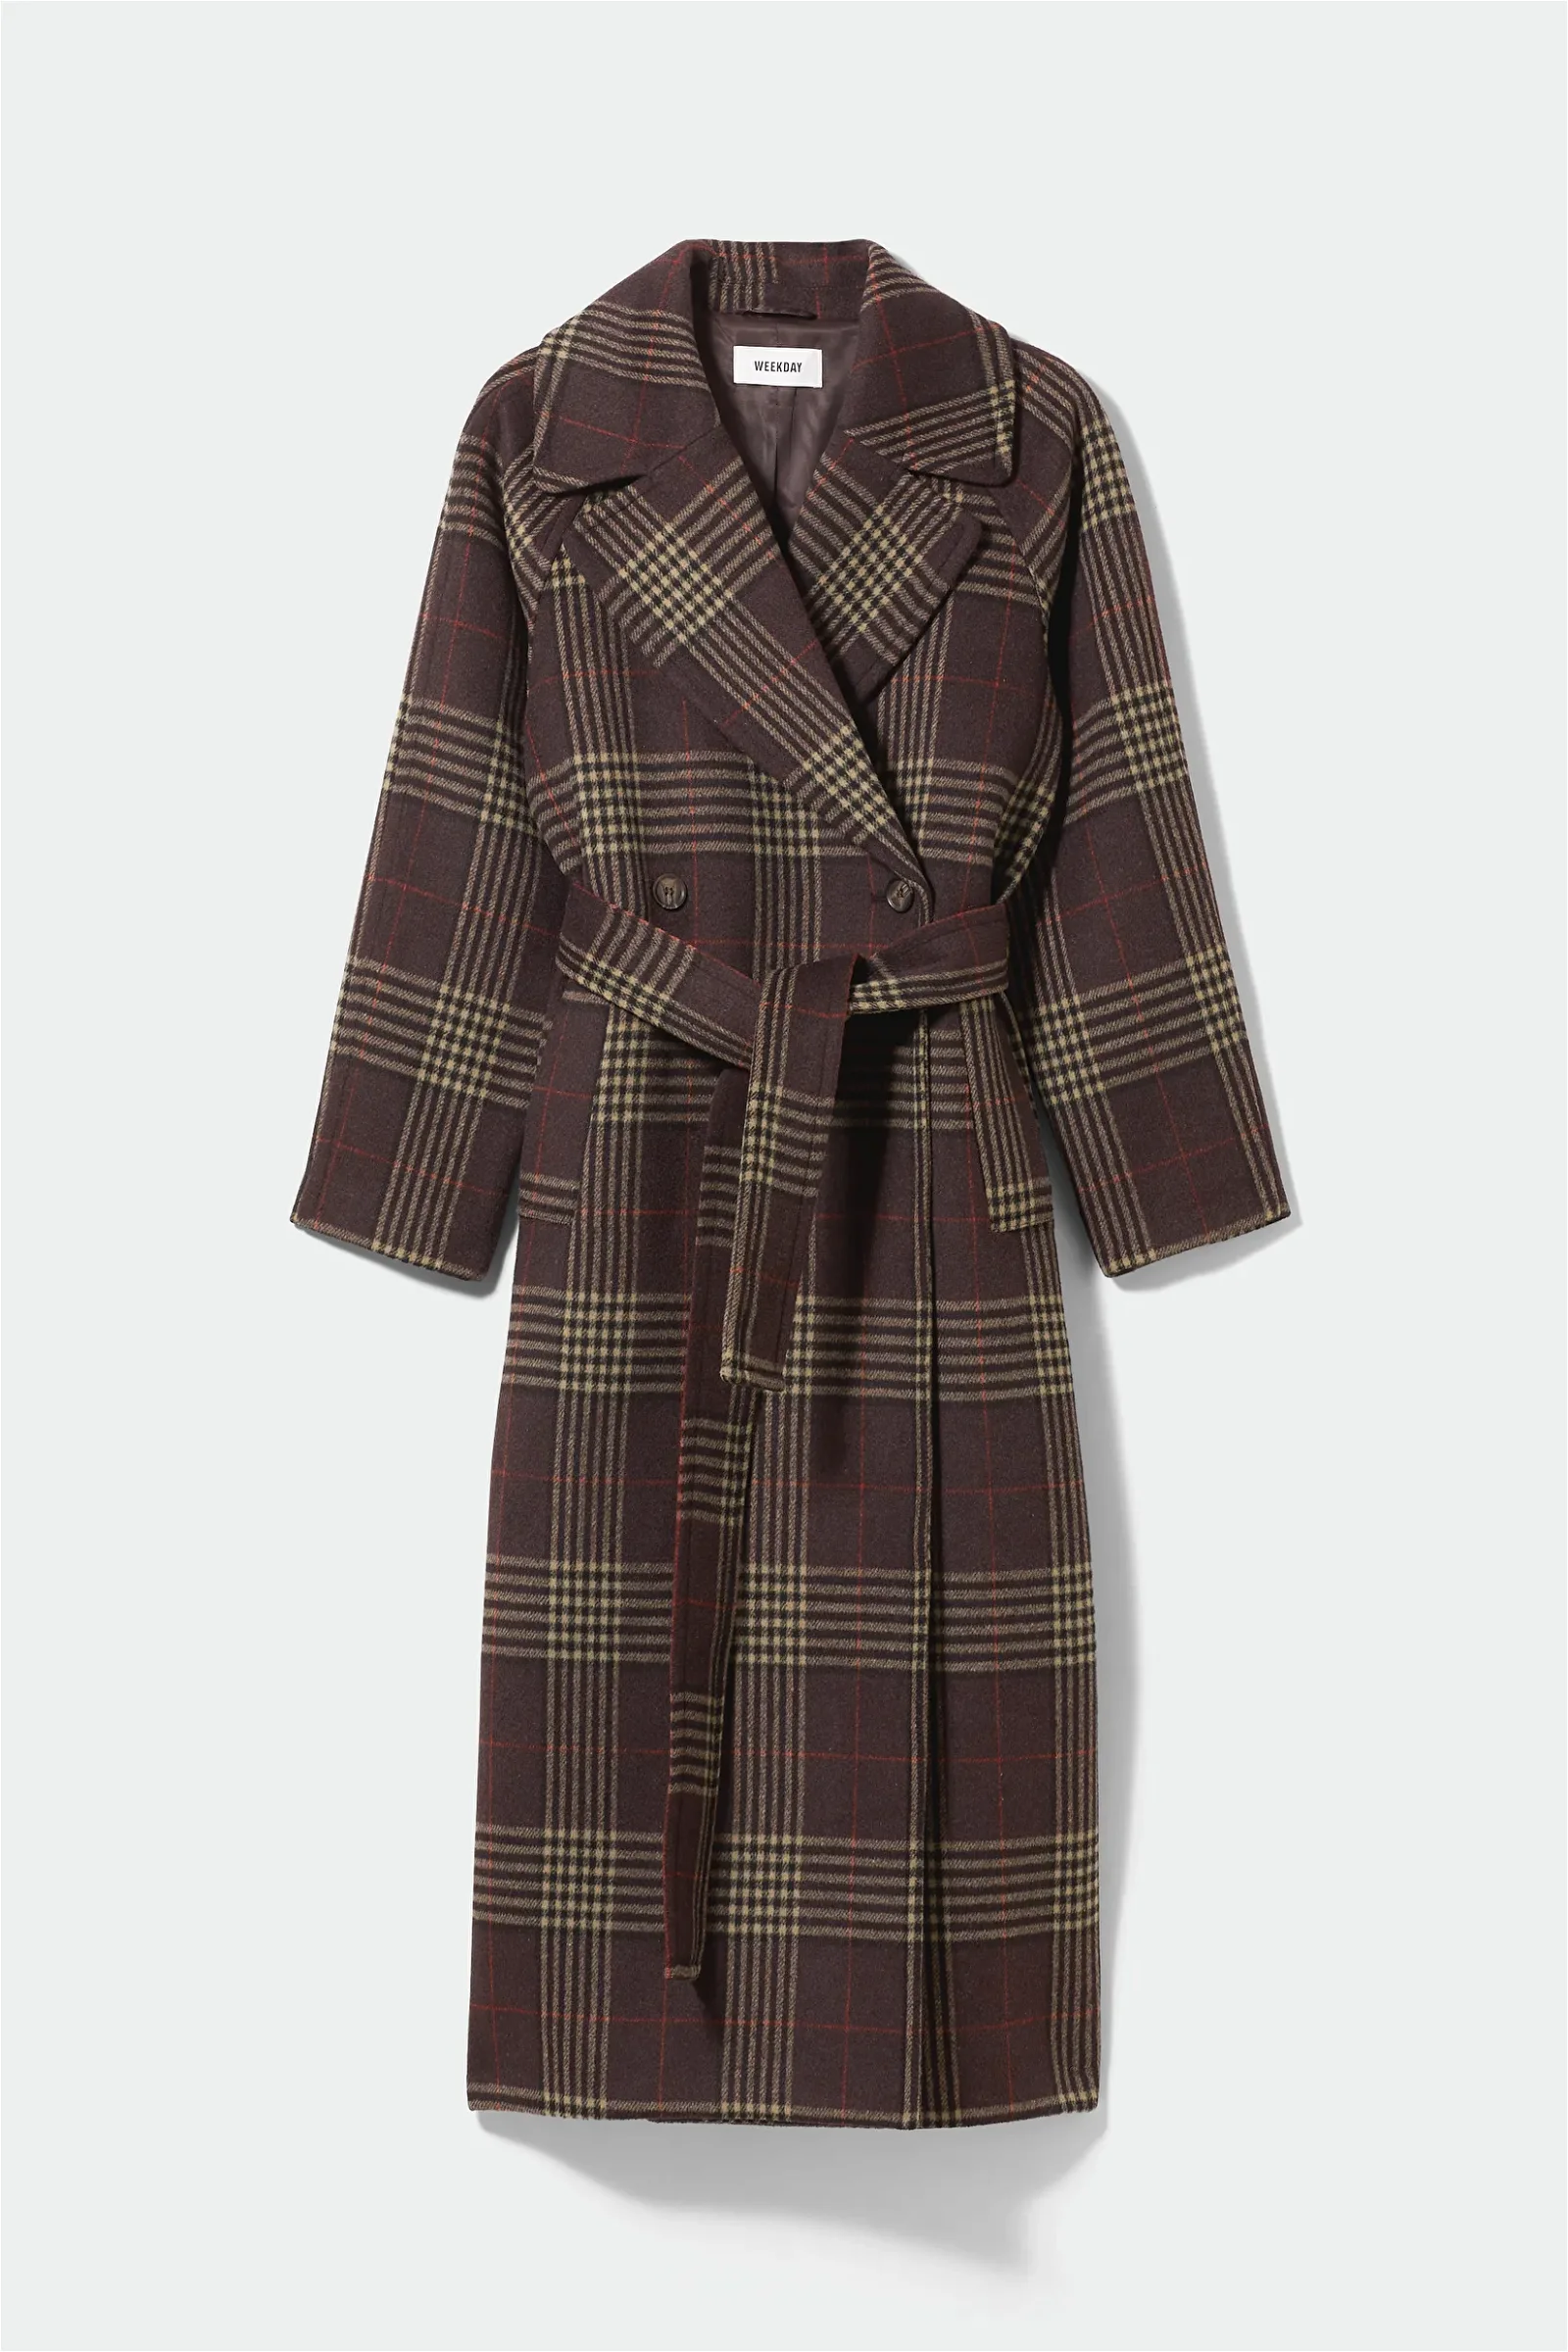 WEEKDAY Kia Oversized Wool Blend Coat in Brown check | Endource